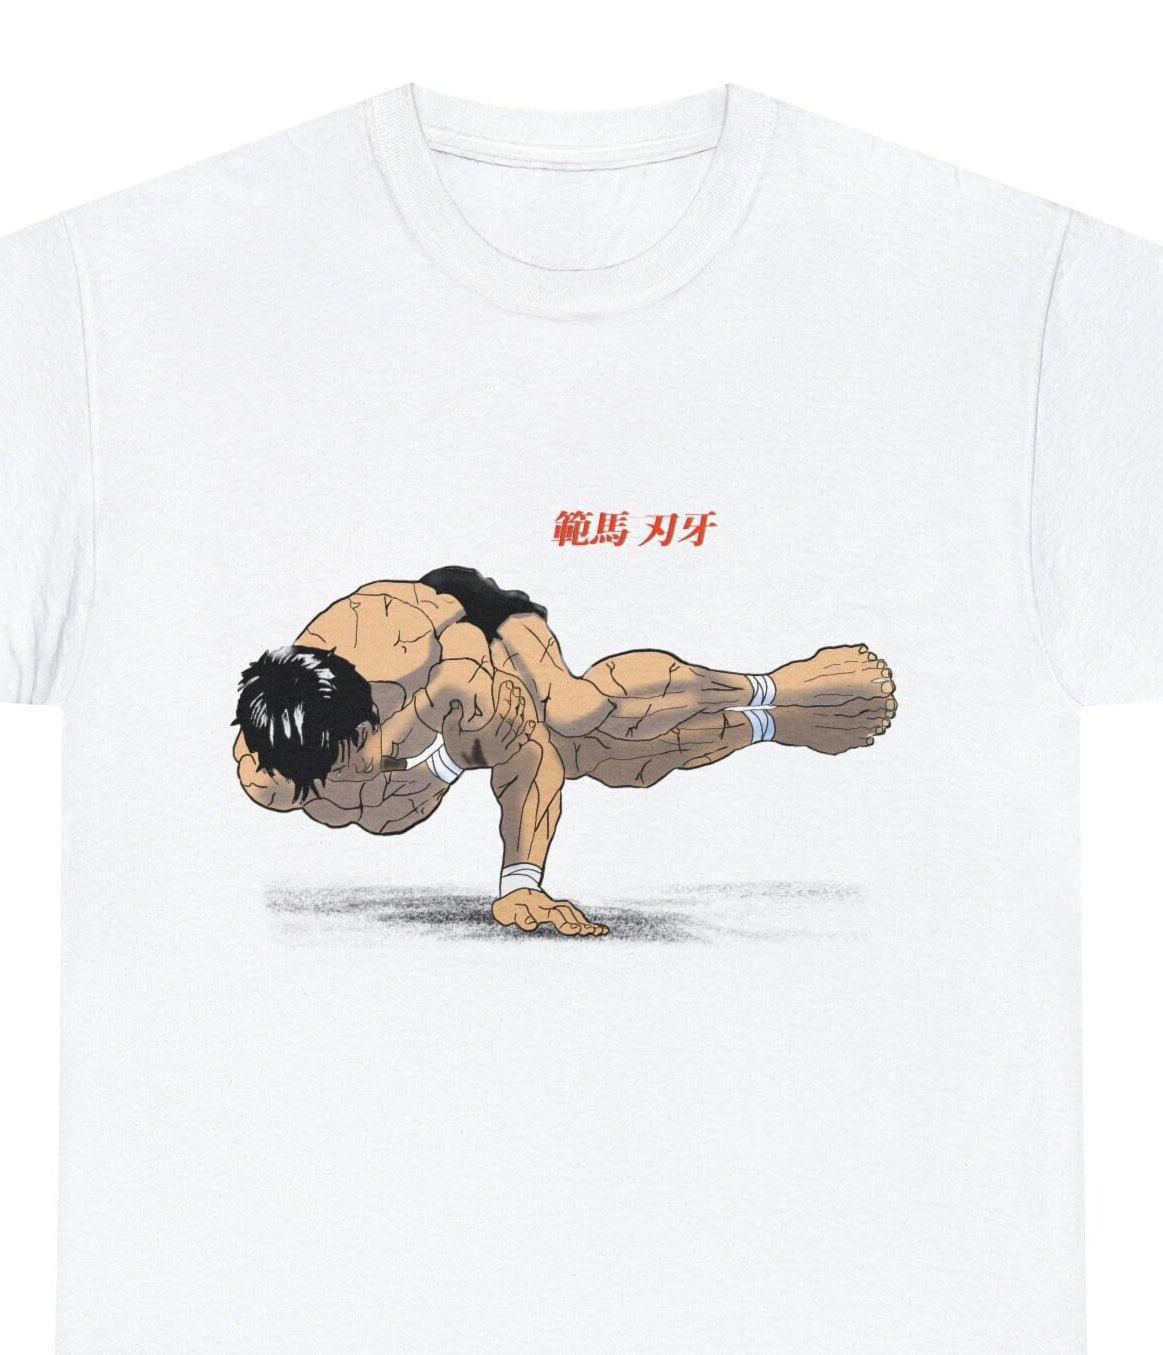 Japanese print shirt